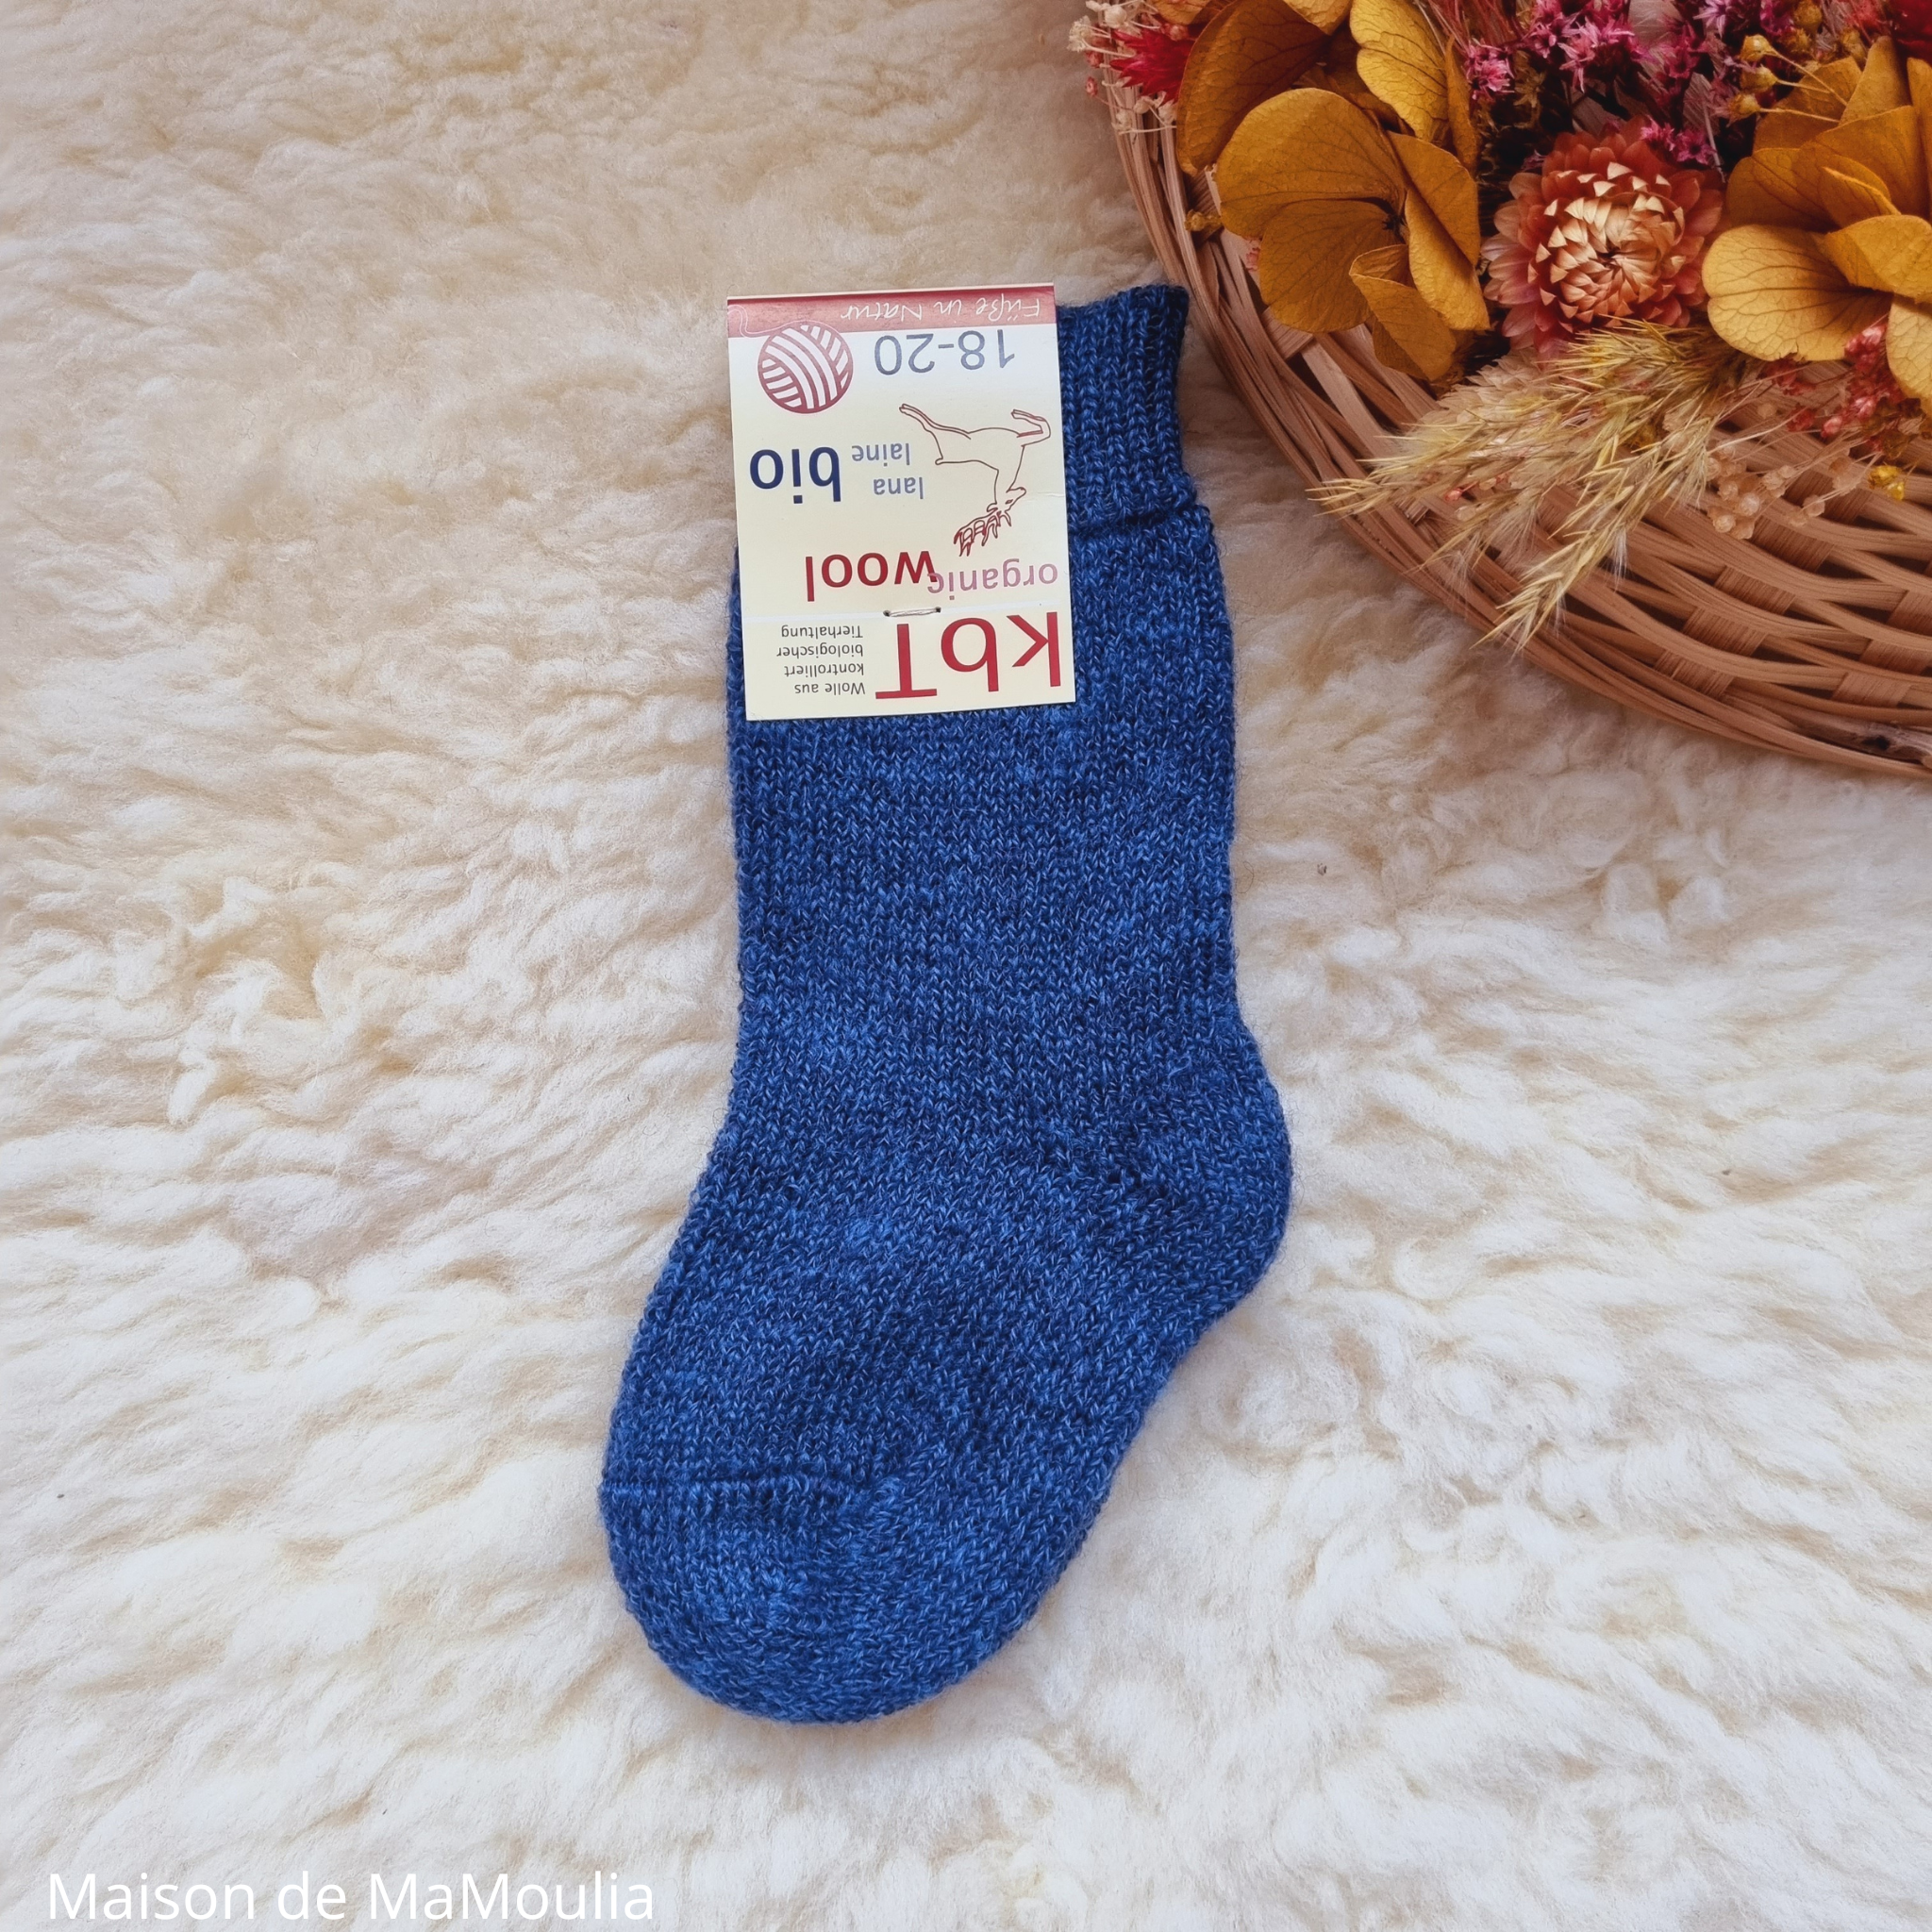 10-chaussettes-chaudes-pure-laine-bio-ecologique-hirsch-natur-bebe-enfant-maison-de-mamoulia-tres-epaisses-bleu